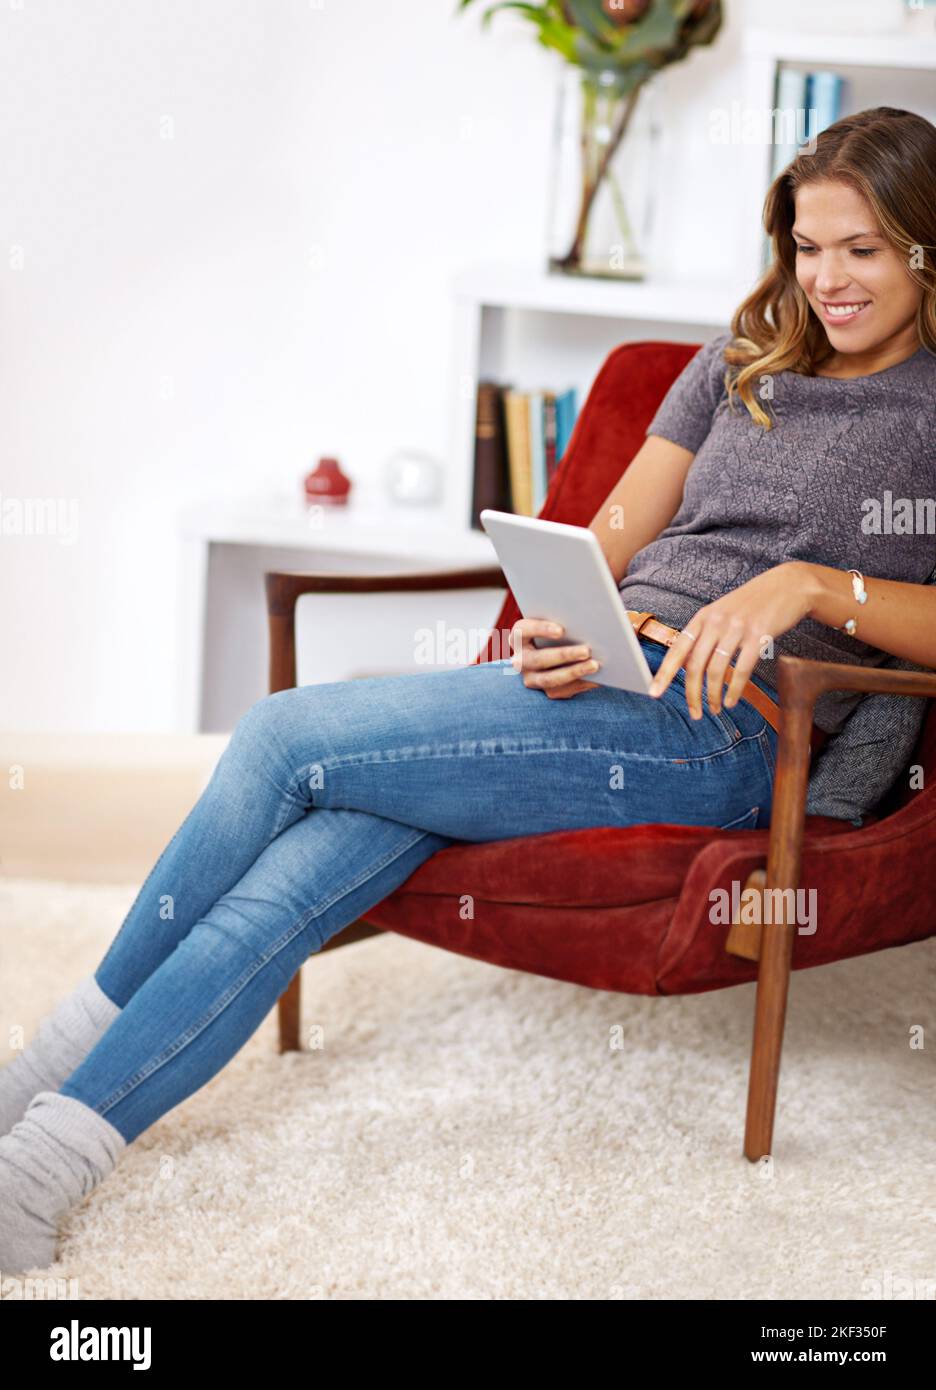 Rilassarsi con un po' di intrattenimento online. Una giovane donna che usa il suo tablet digitale a casa. Foto Stock